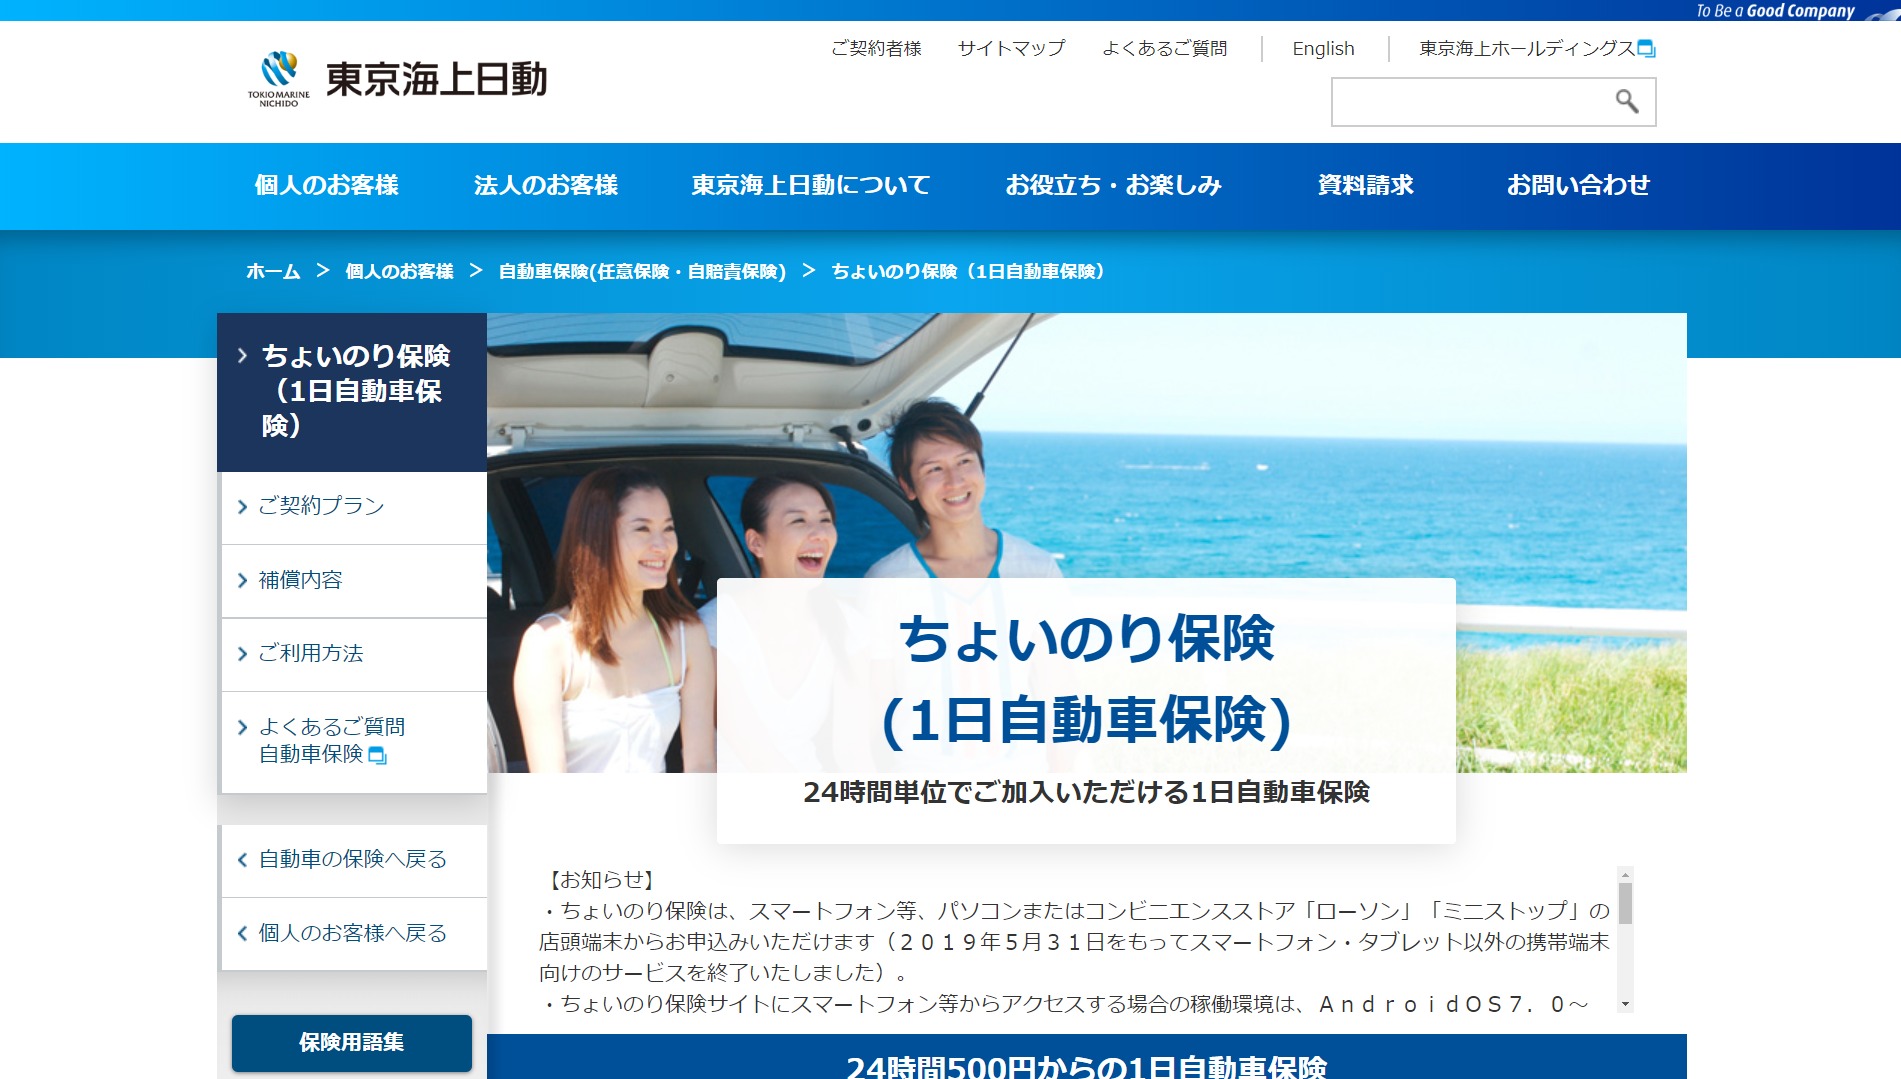 のり 保険 海上 ちょい 東京 ちょいのり保険のご登録